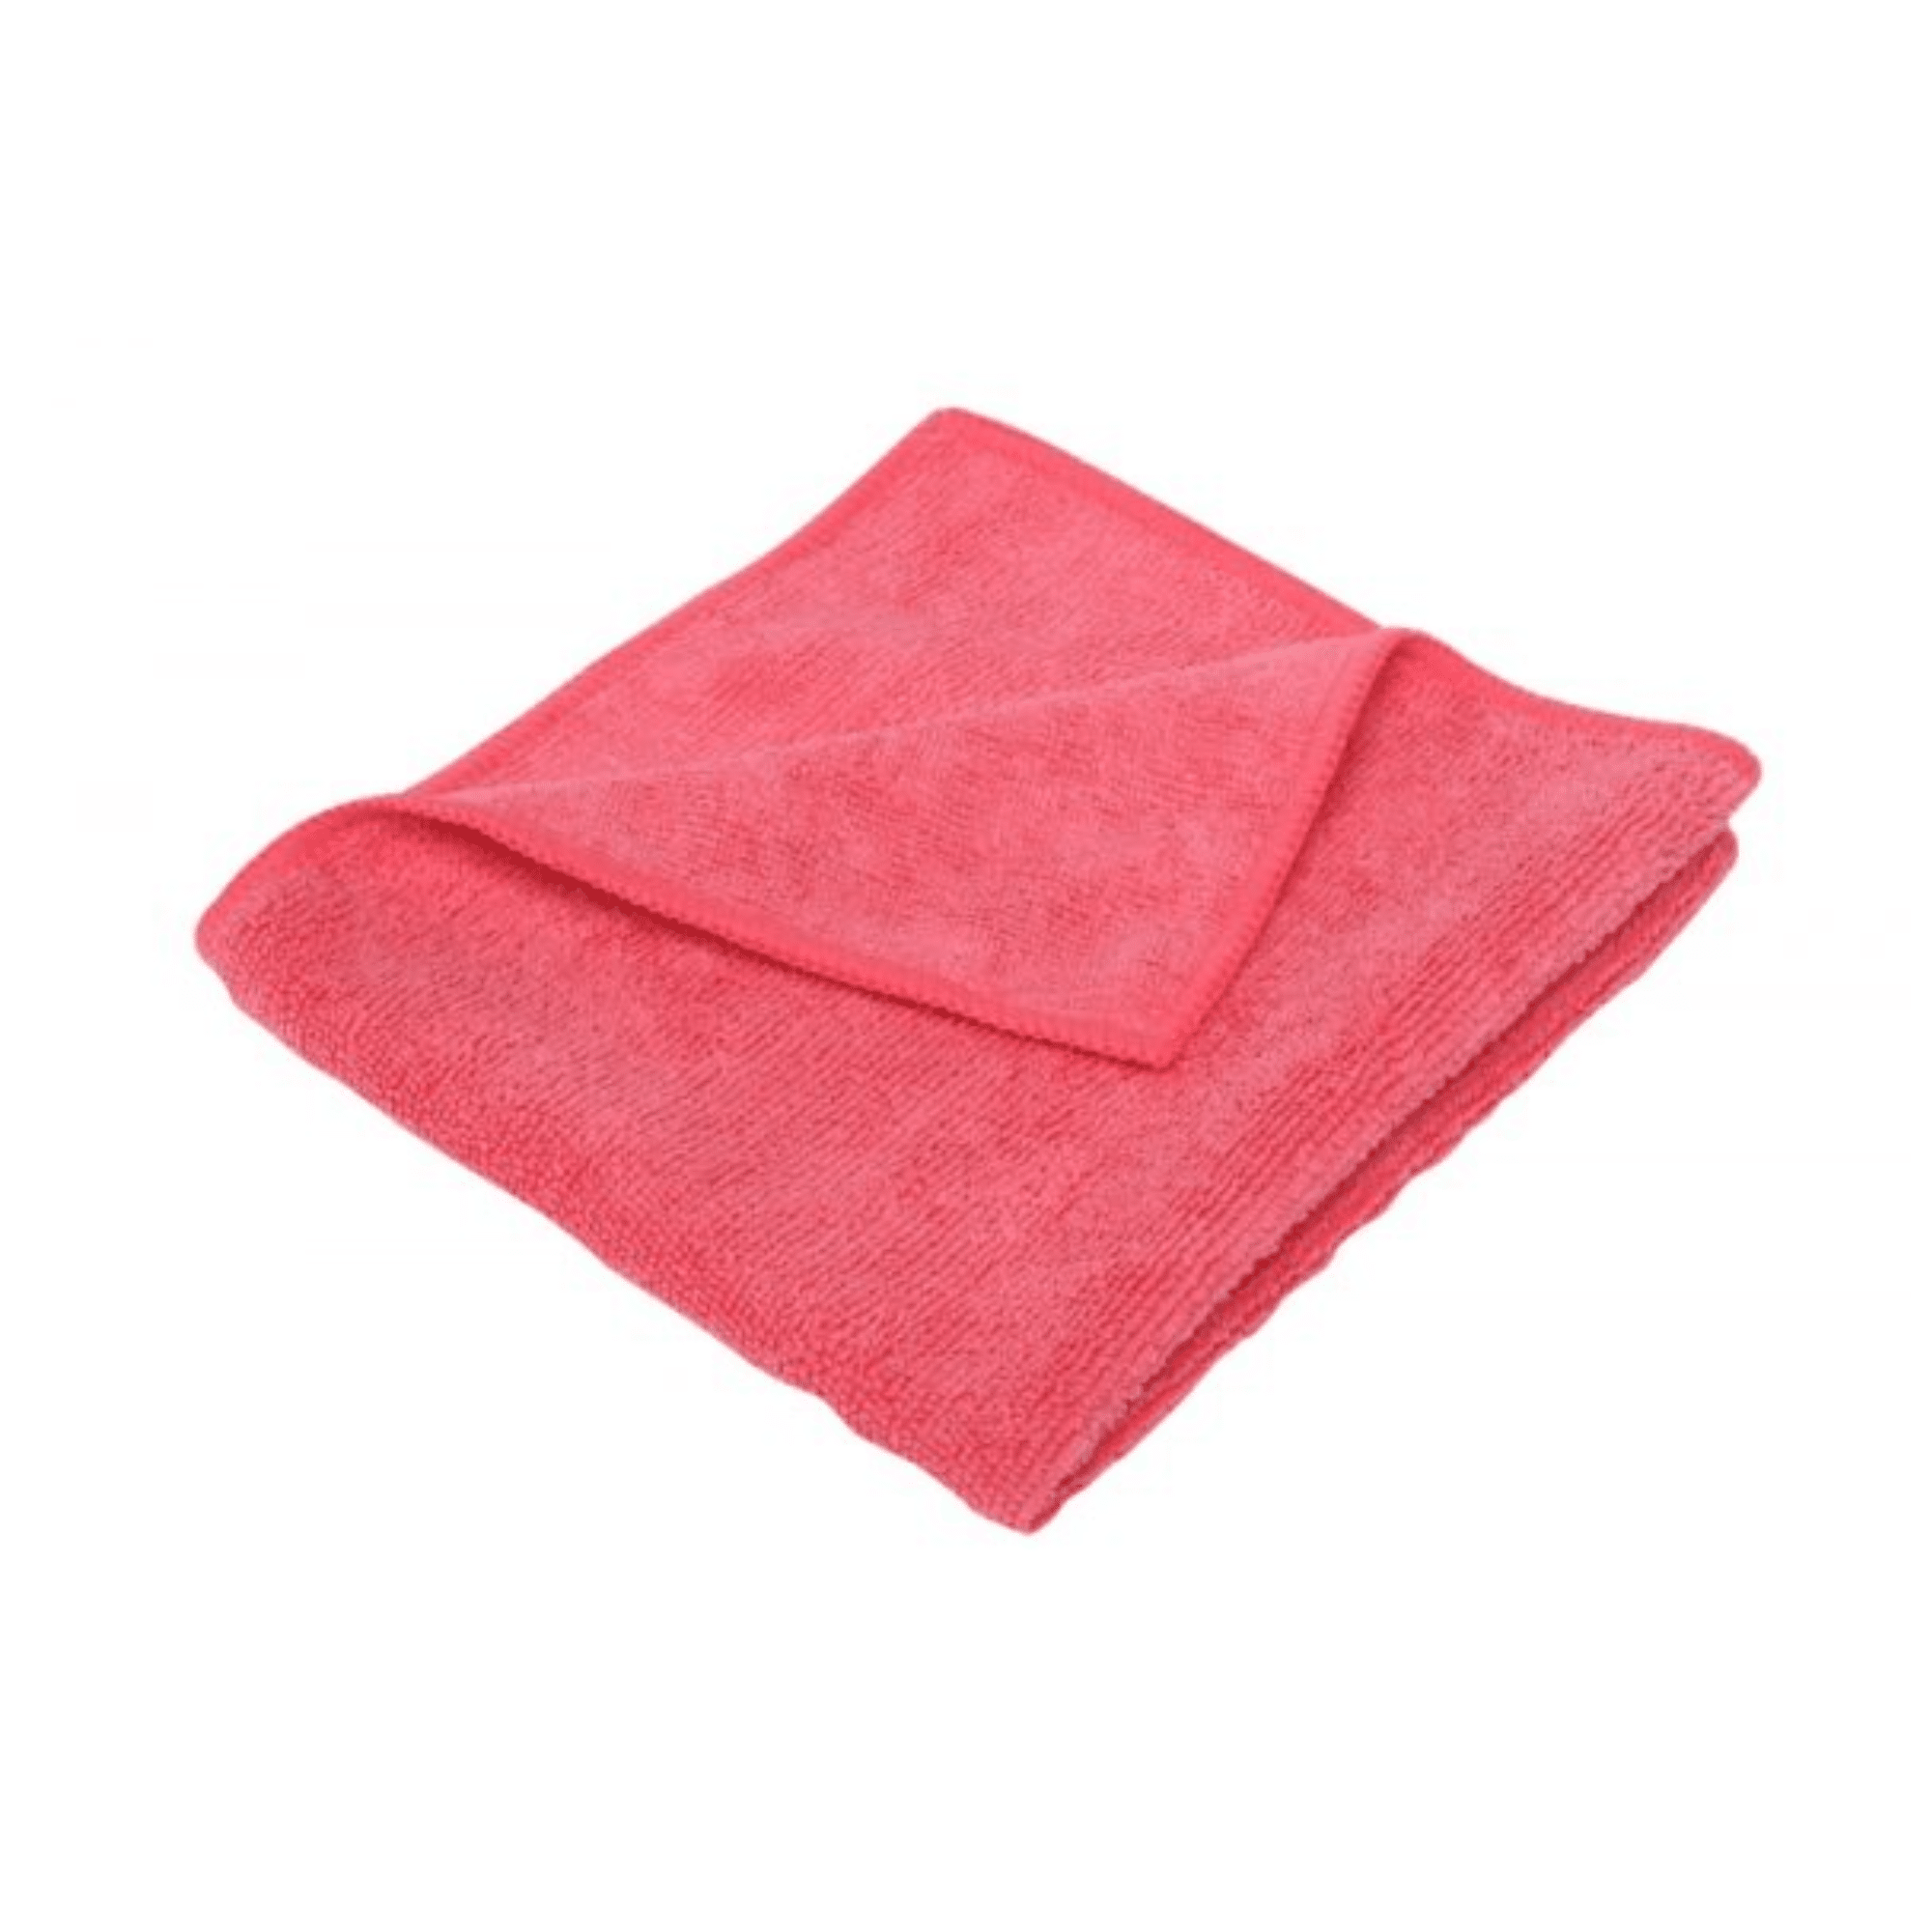 Tuf Microfibre Cloth Red – EACH